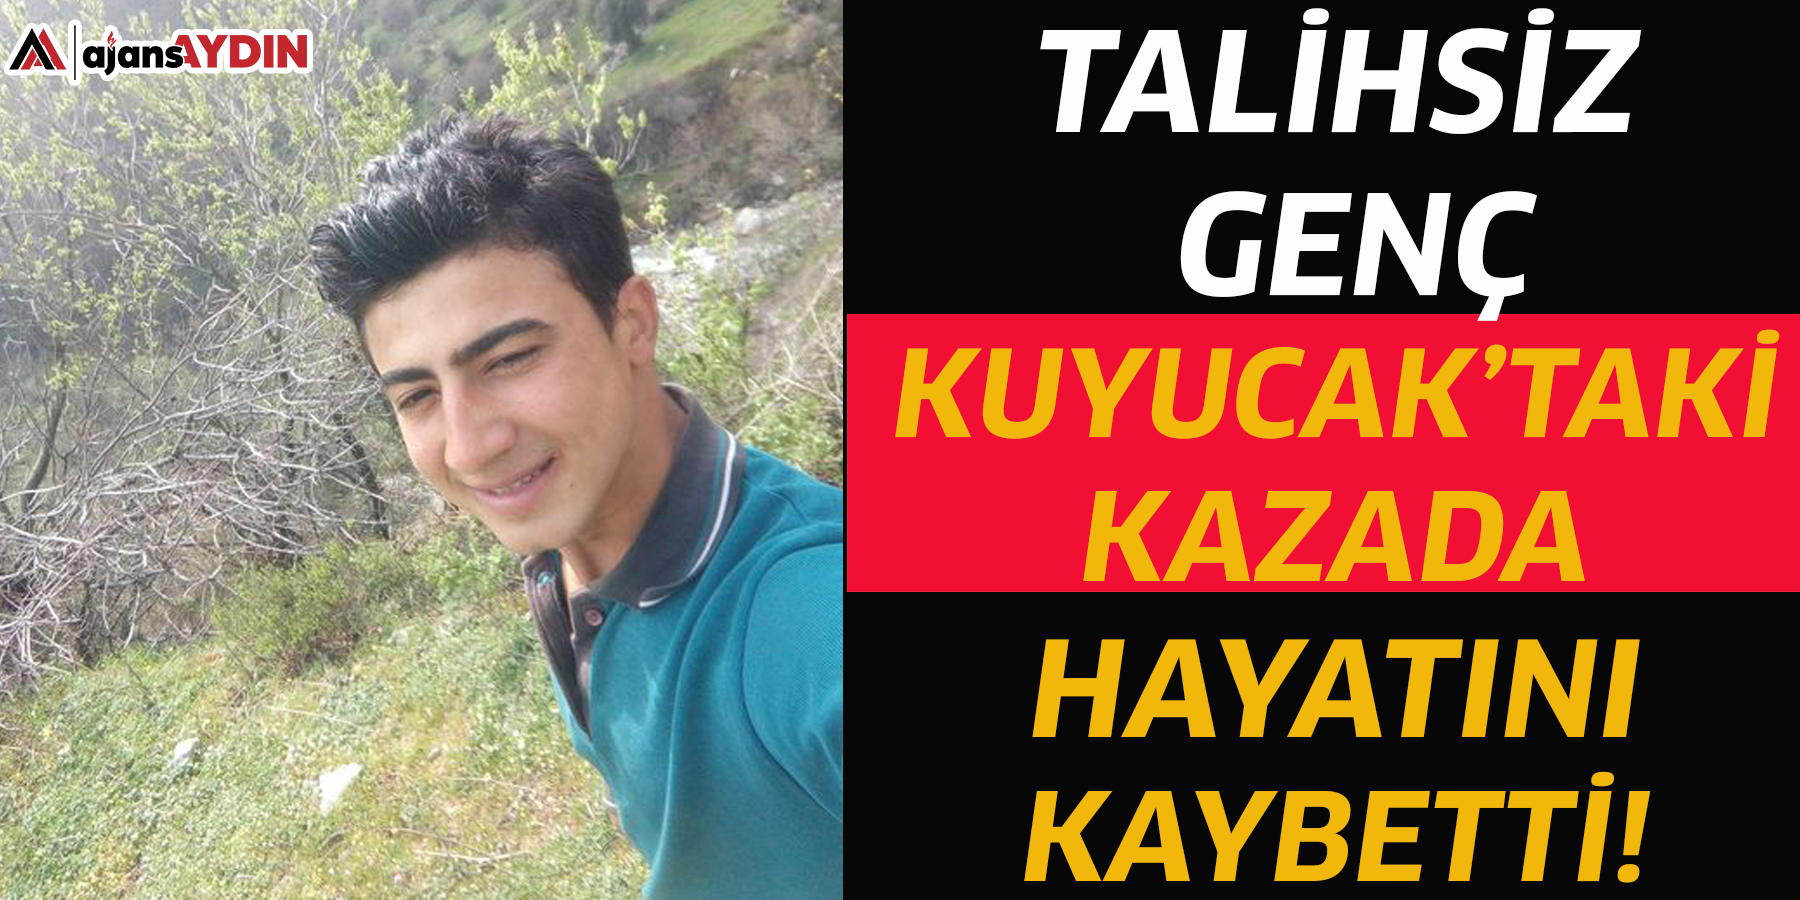 Talihsiz genç Kuyucak’taki kazada hayatını kaybetti!